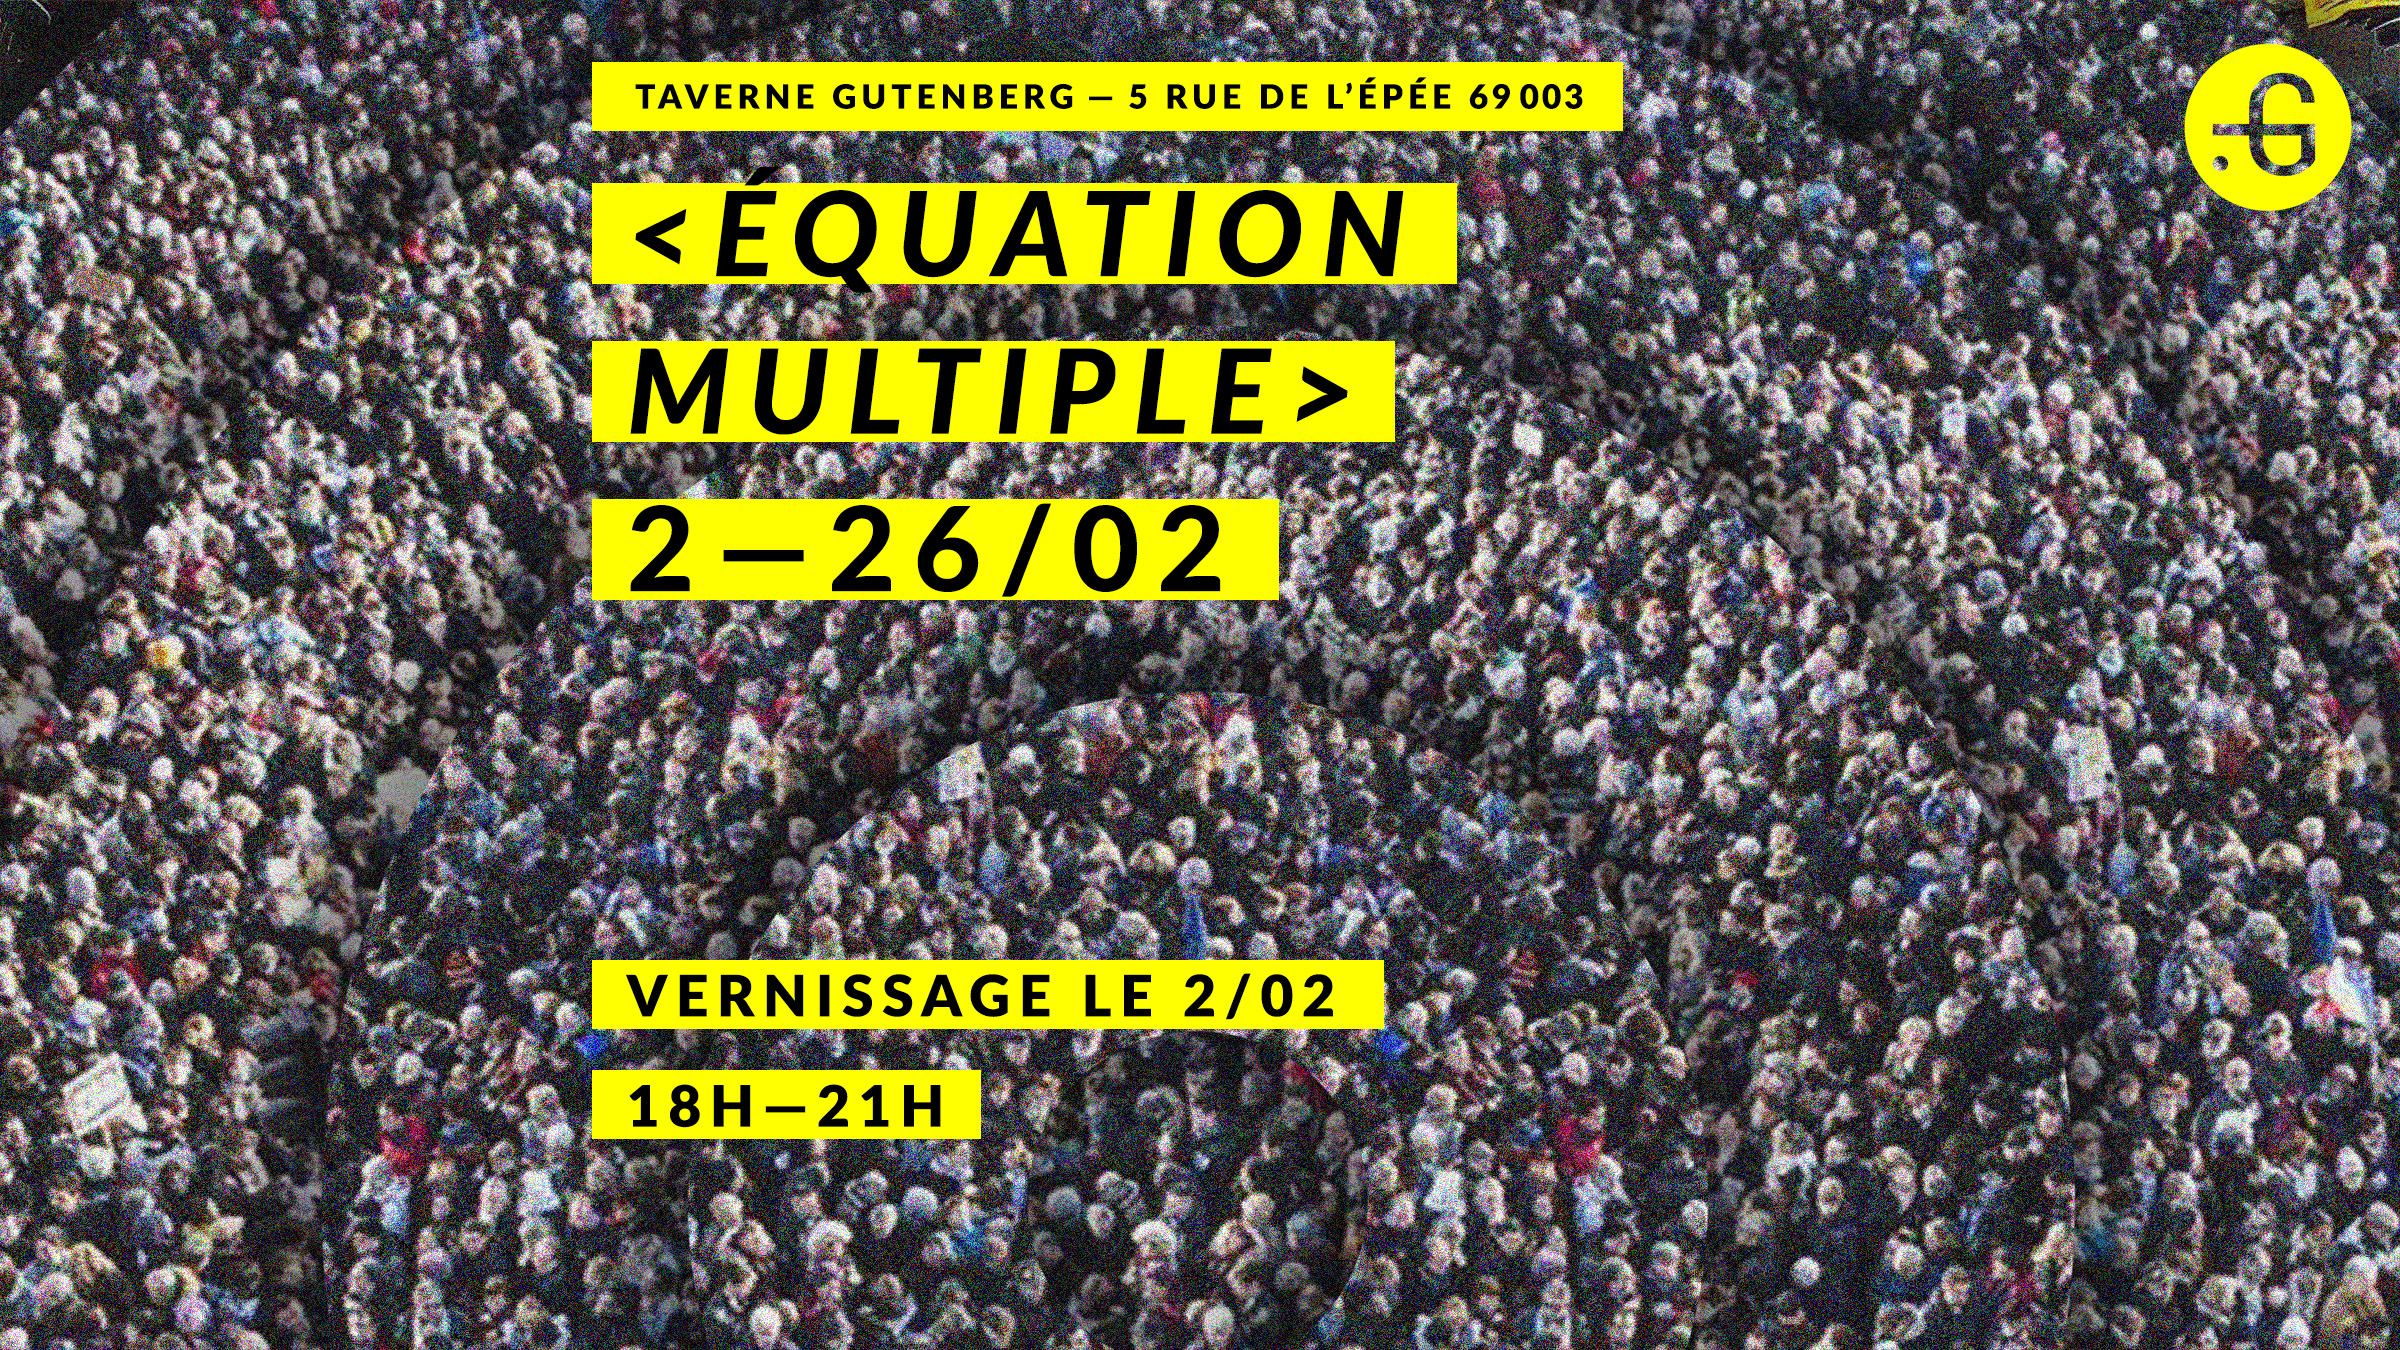 Affiche "Équation multiple", Taverne Gutenberg, 02/02/2017